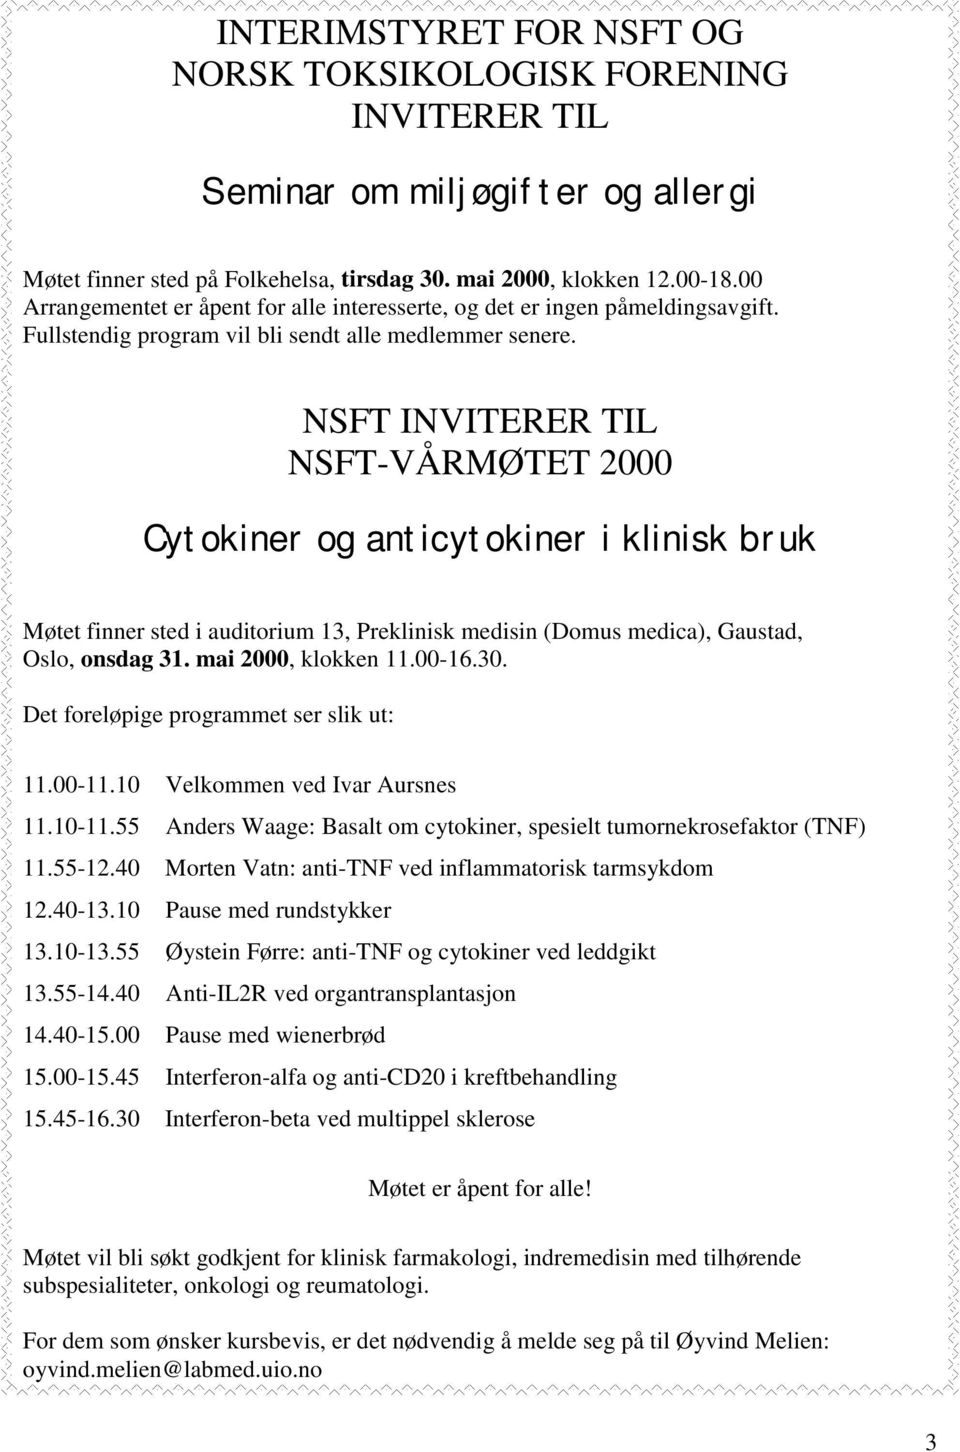 NSFT INVITERER TIL NSFT-VÅRMØTET 2000 Cytokiner og anticytokiner i klinisk bruk Møtet finner sted i auditorium 13, Preklinisk medisin (Domus medica), Gaustad, Oslo, onsdag 31. mai 2000, klokken 11.